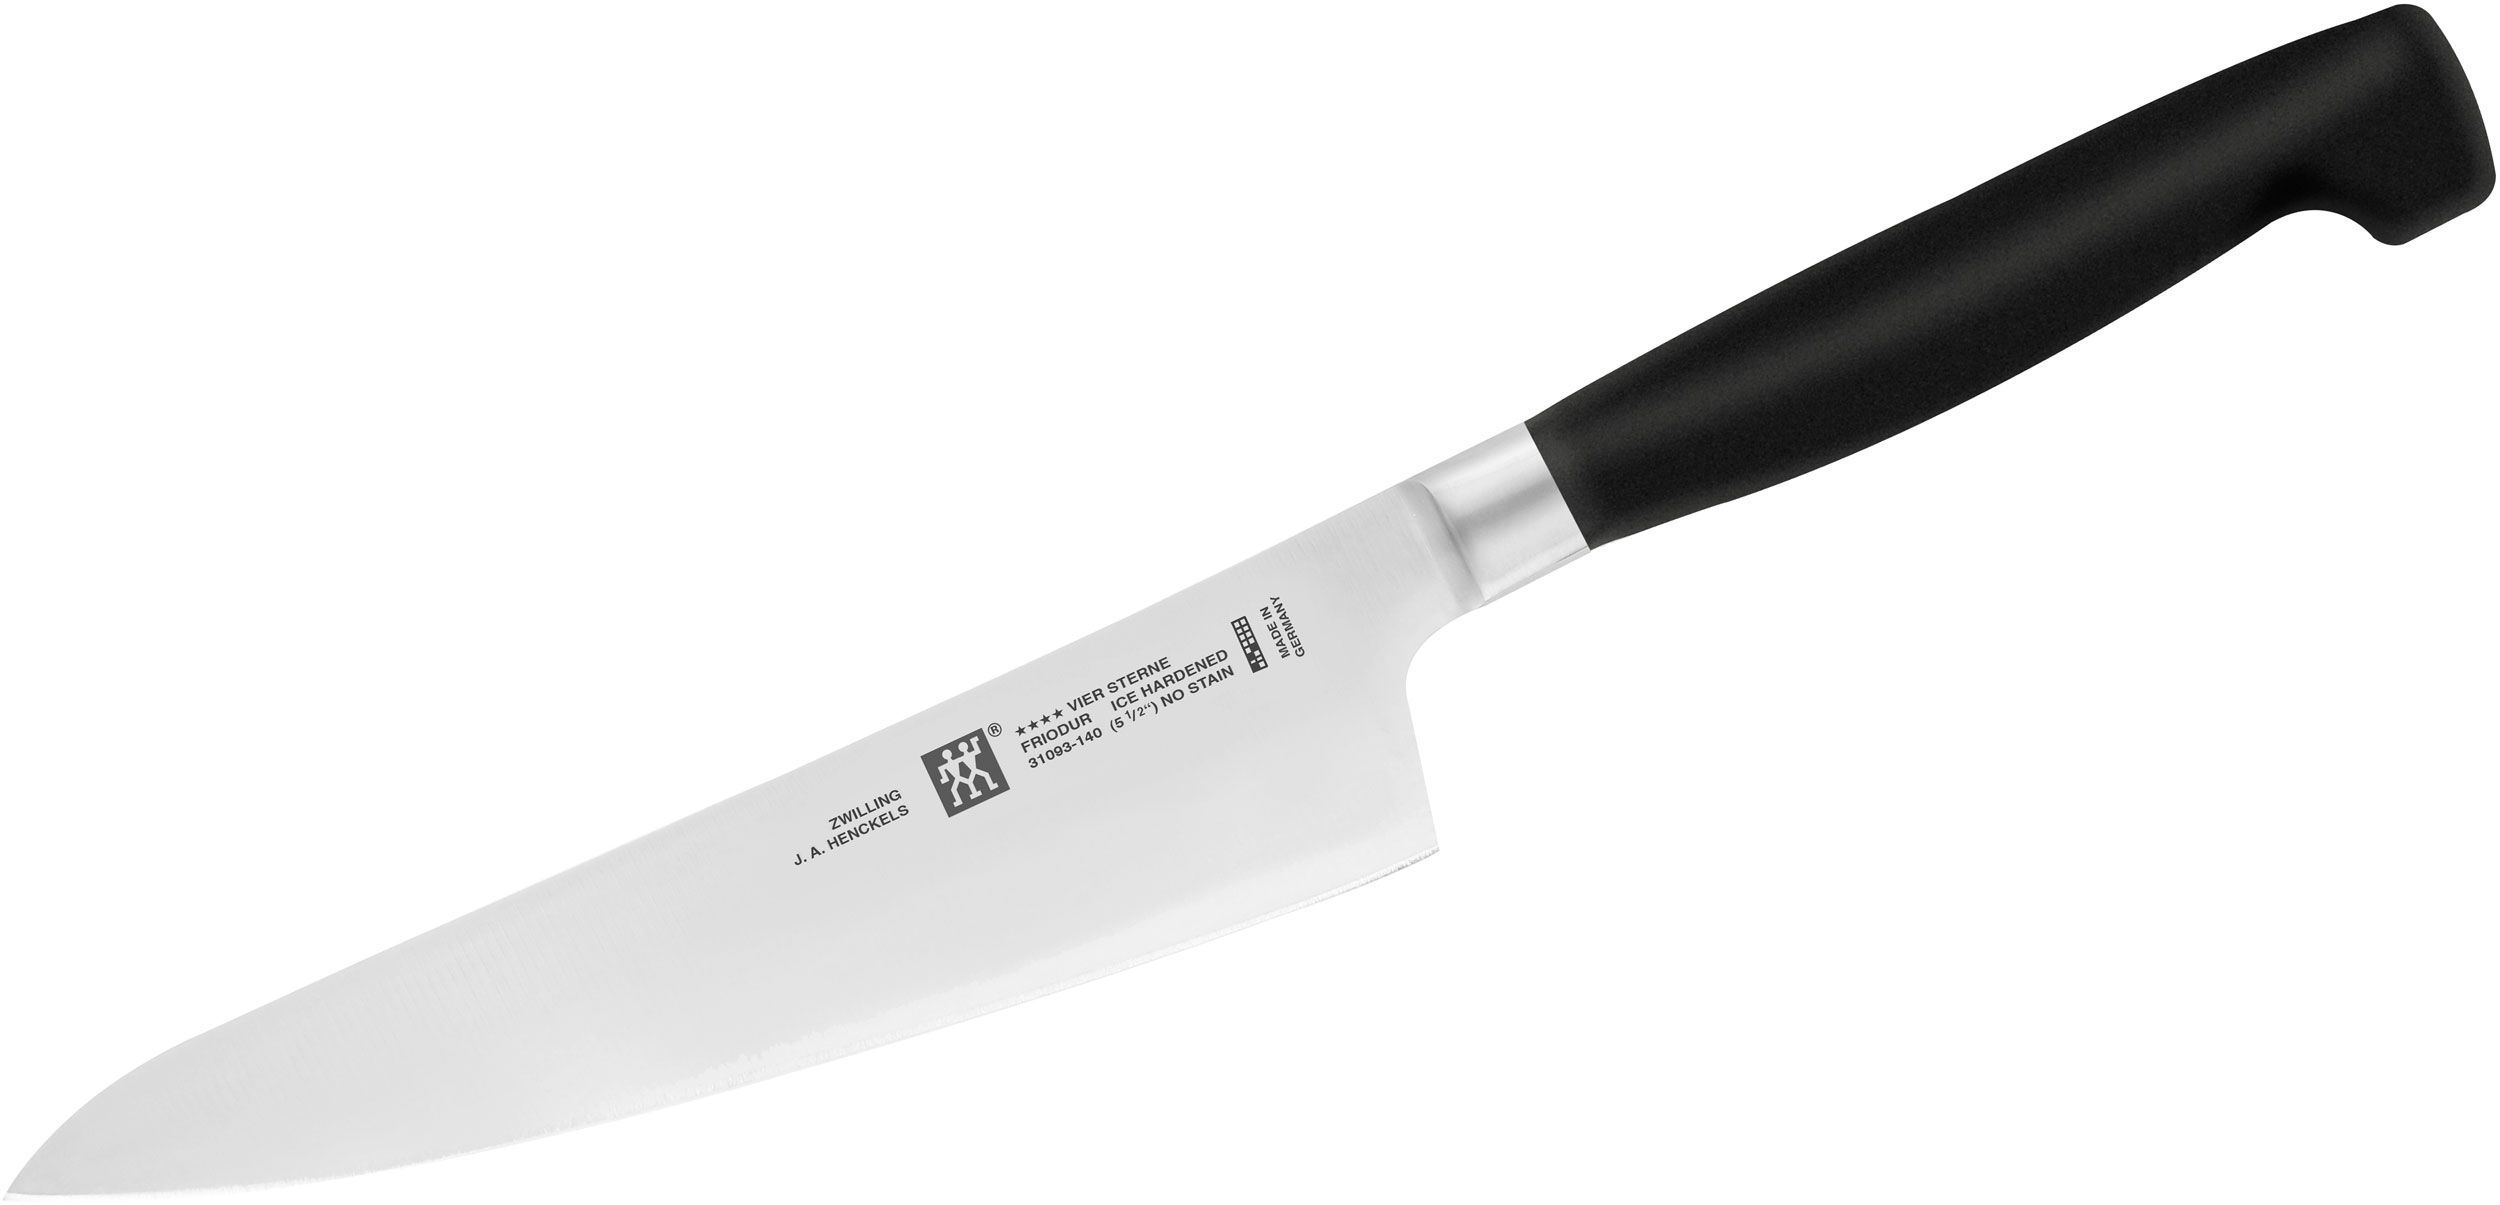 Henckels' Self-Sharpening Knife Set Is 70% Off for Black Friday